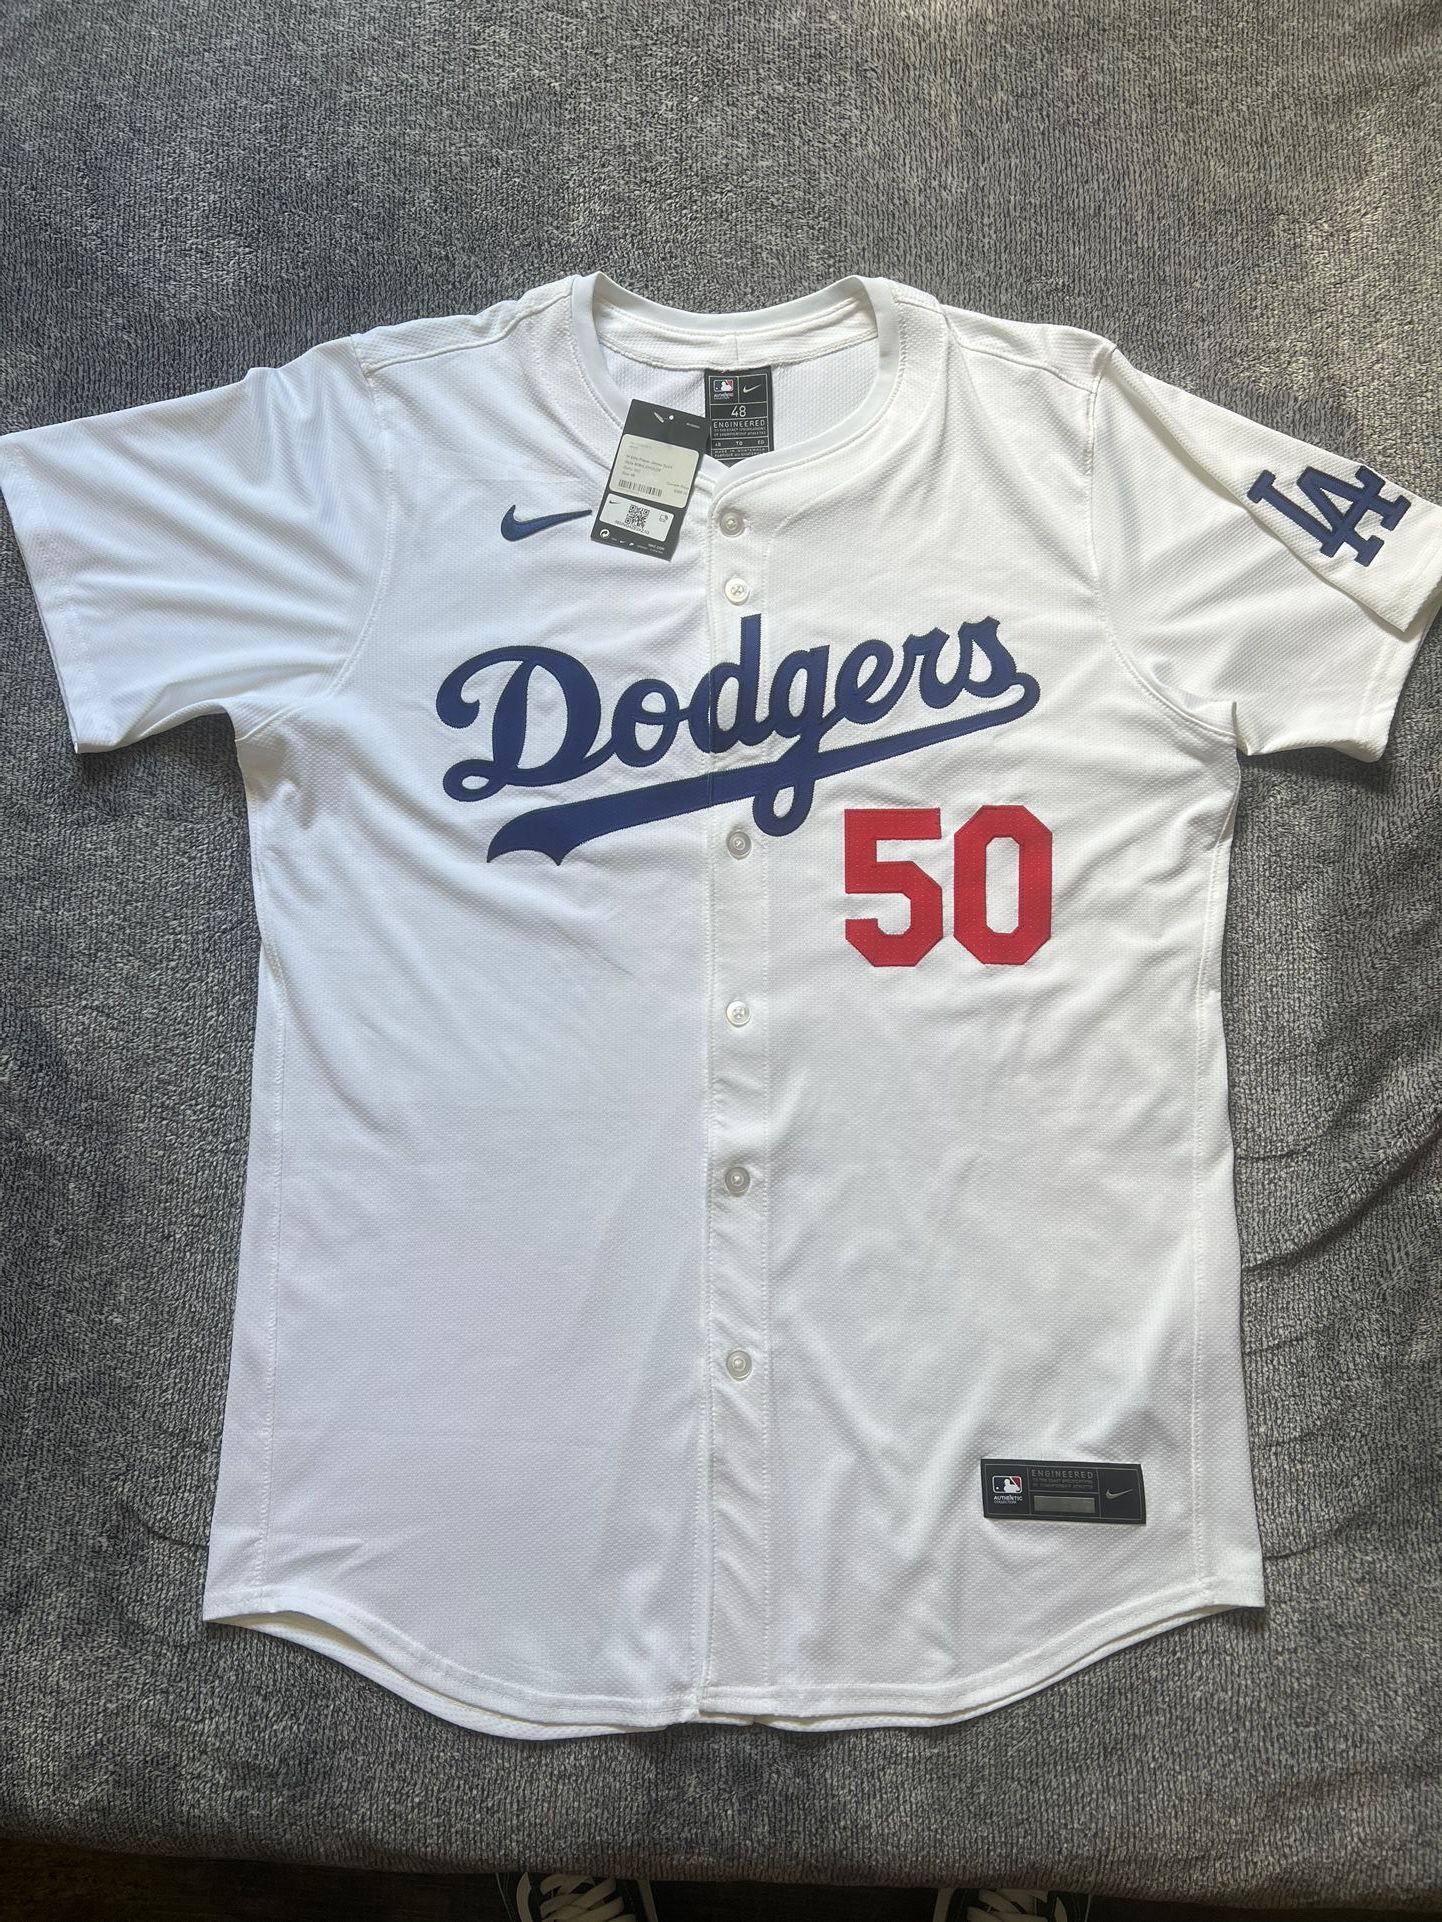 Nike Dodgers Authentic Elite Jersey Sz.48 (XL)